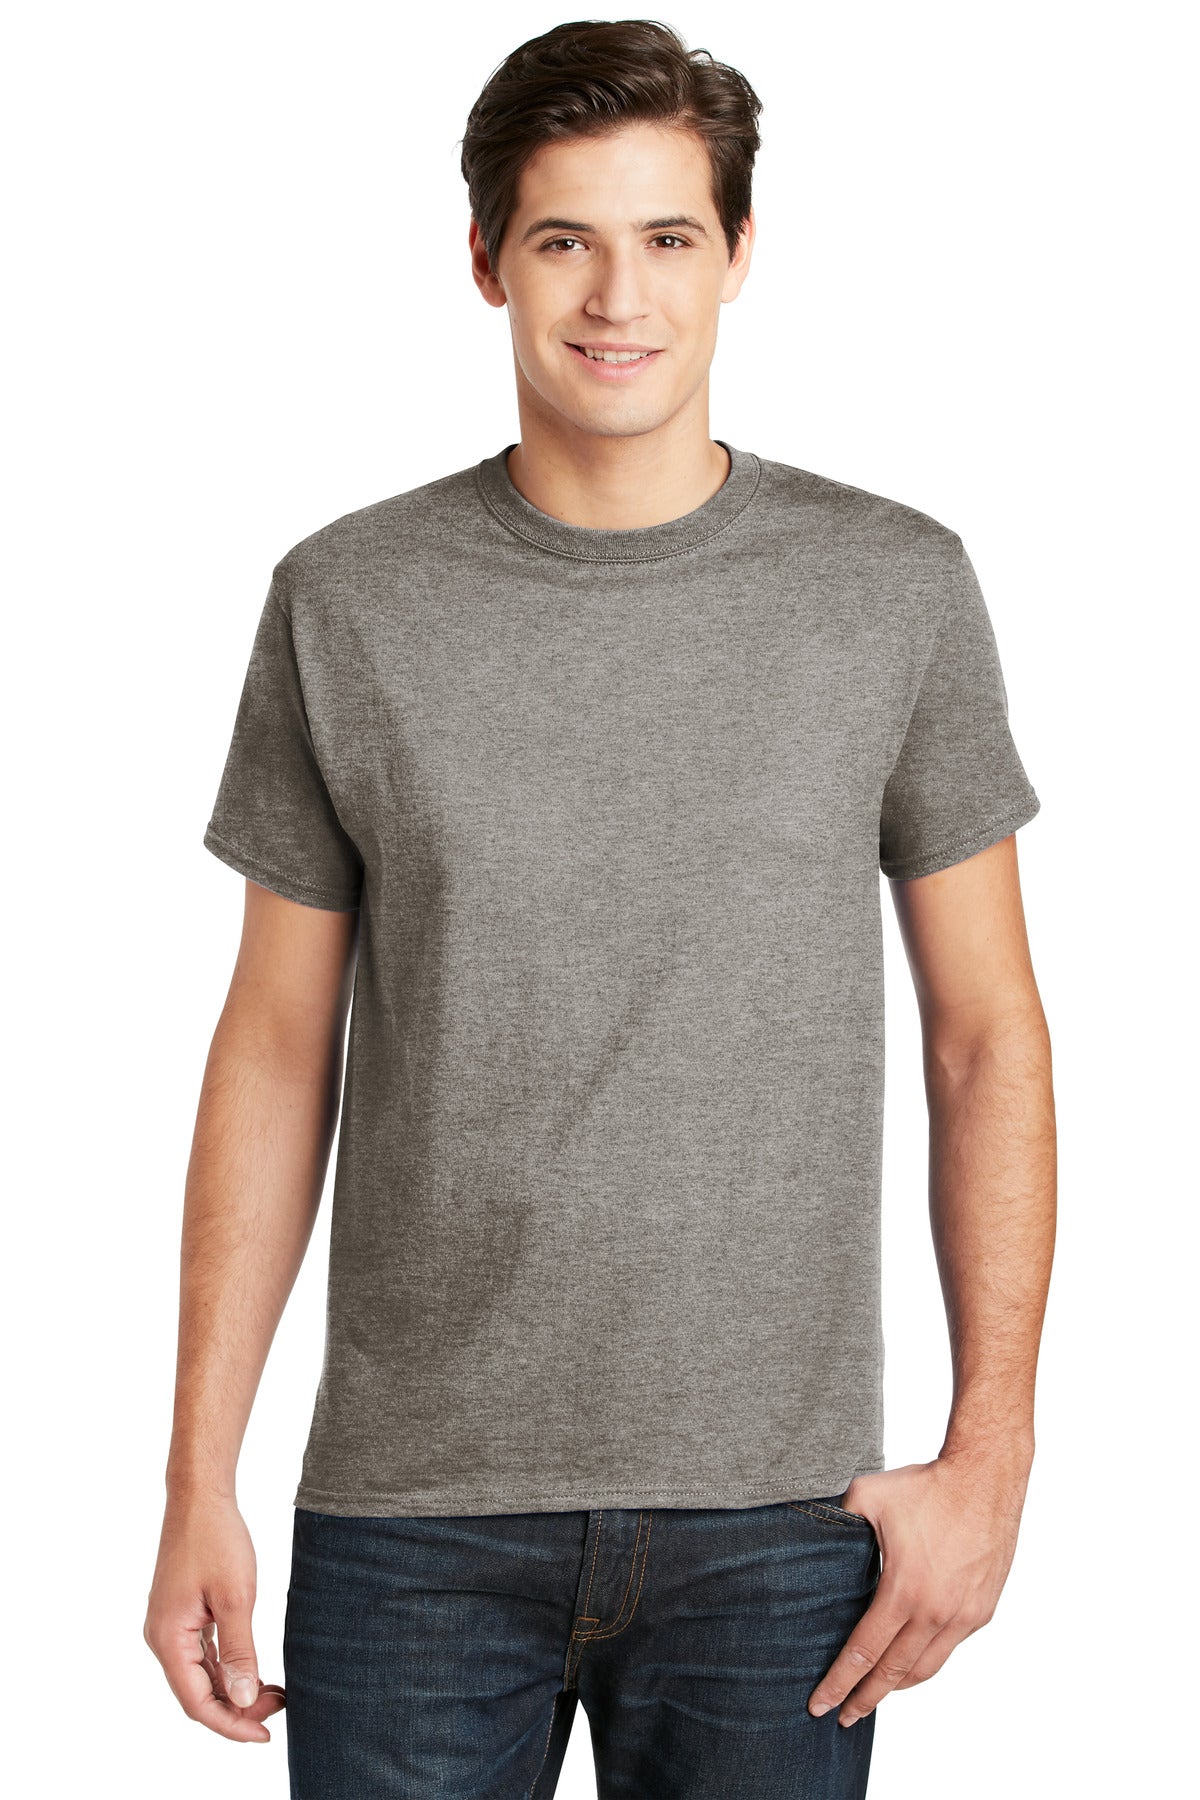 T-Shirts Oxford Gray Hanes